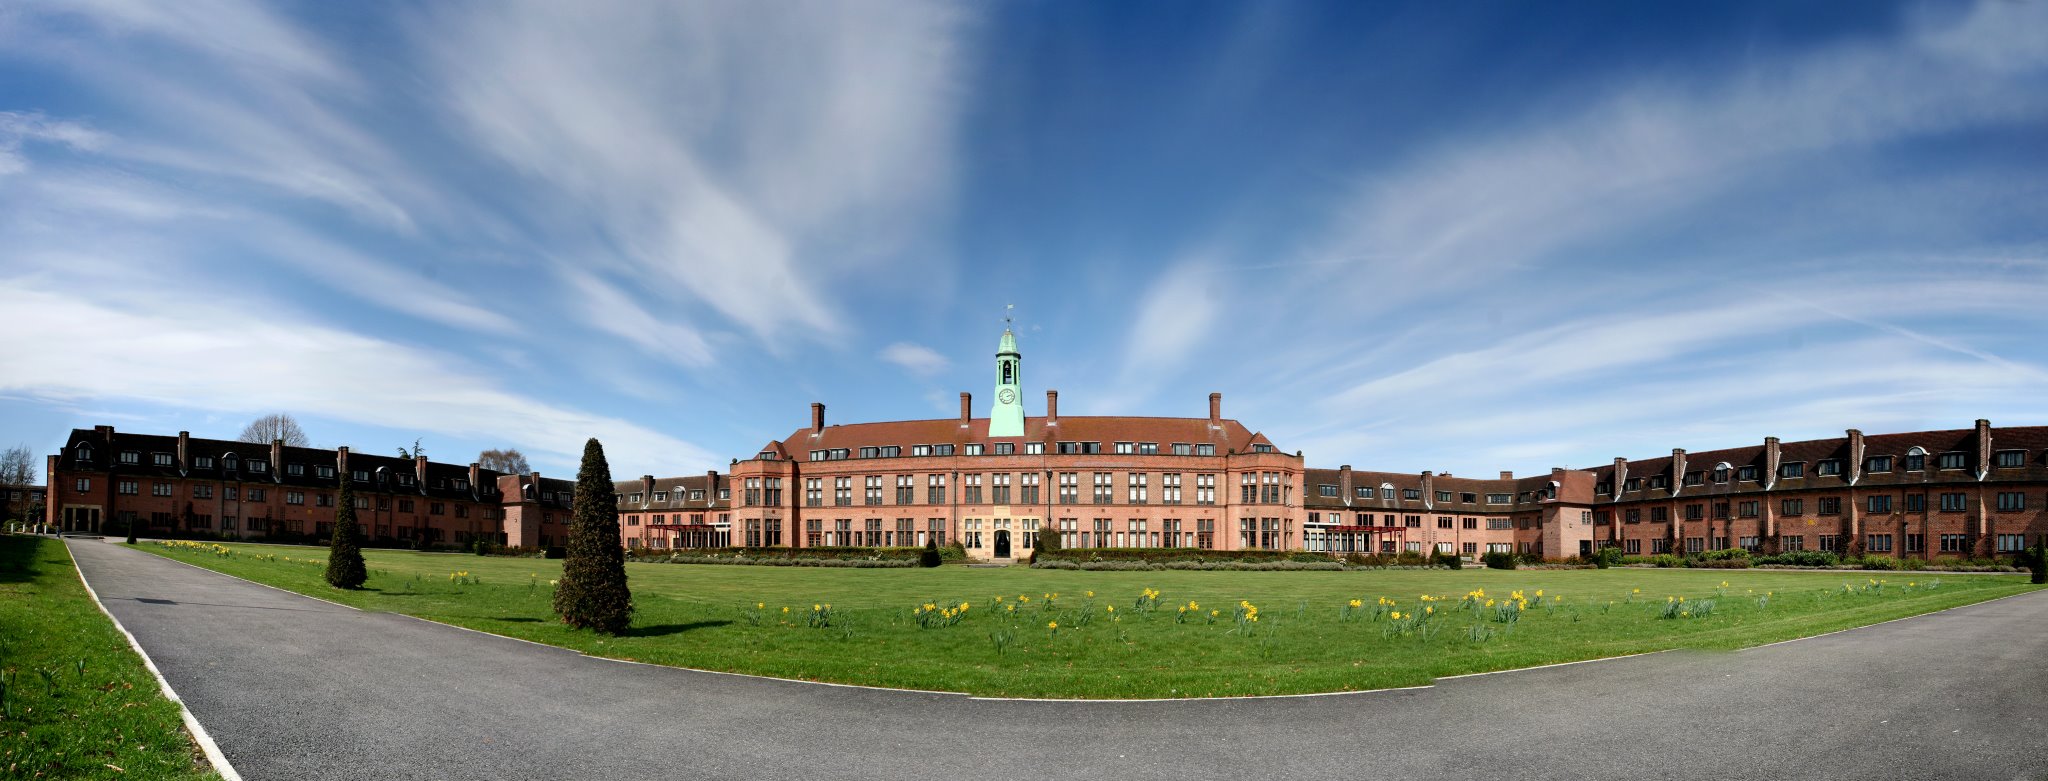 جامعة ليفربول هوب – Liverpool Hope University